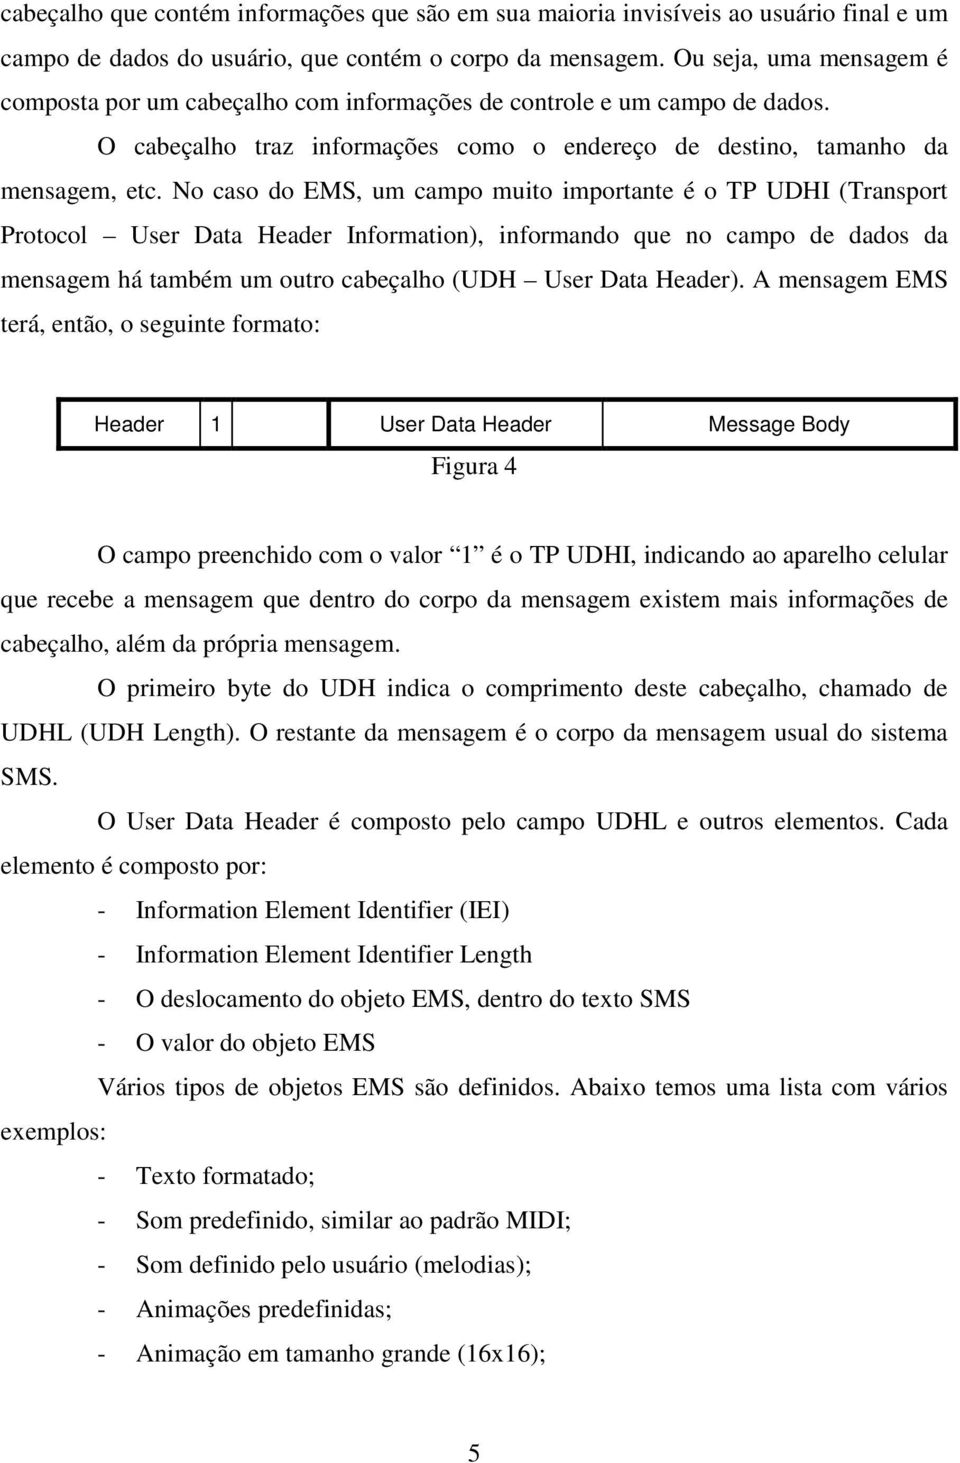 No caso do EMS, um campo muito importante é o TP UDHI (Transport Protocol User Data Header Information), informando que no campo de dados da mensagem há também um outro cabeçalho (UDH User Data